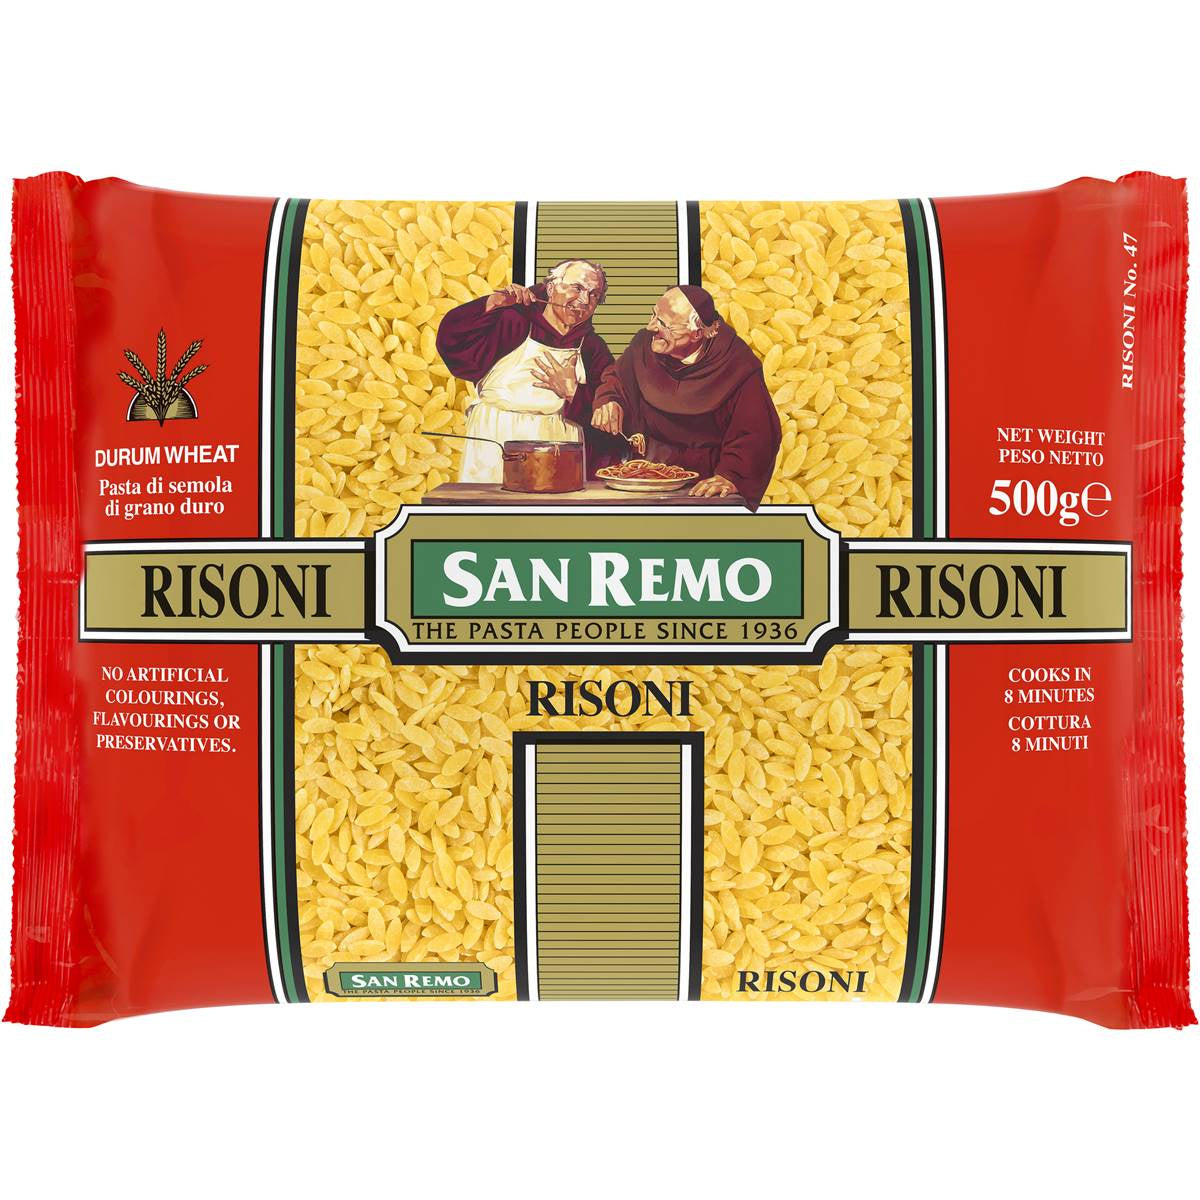 San Remo Risoni Pasta 500g